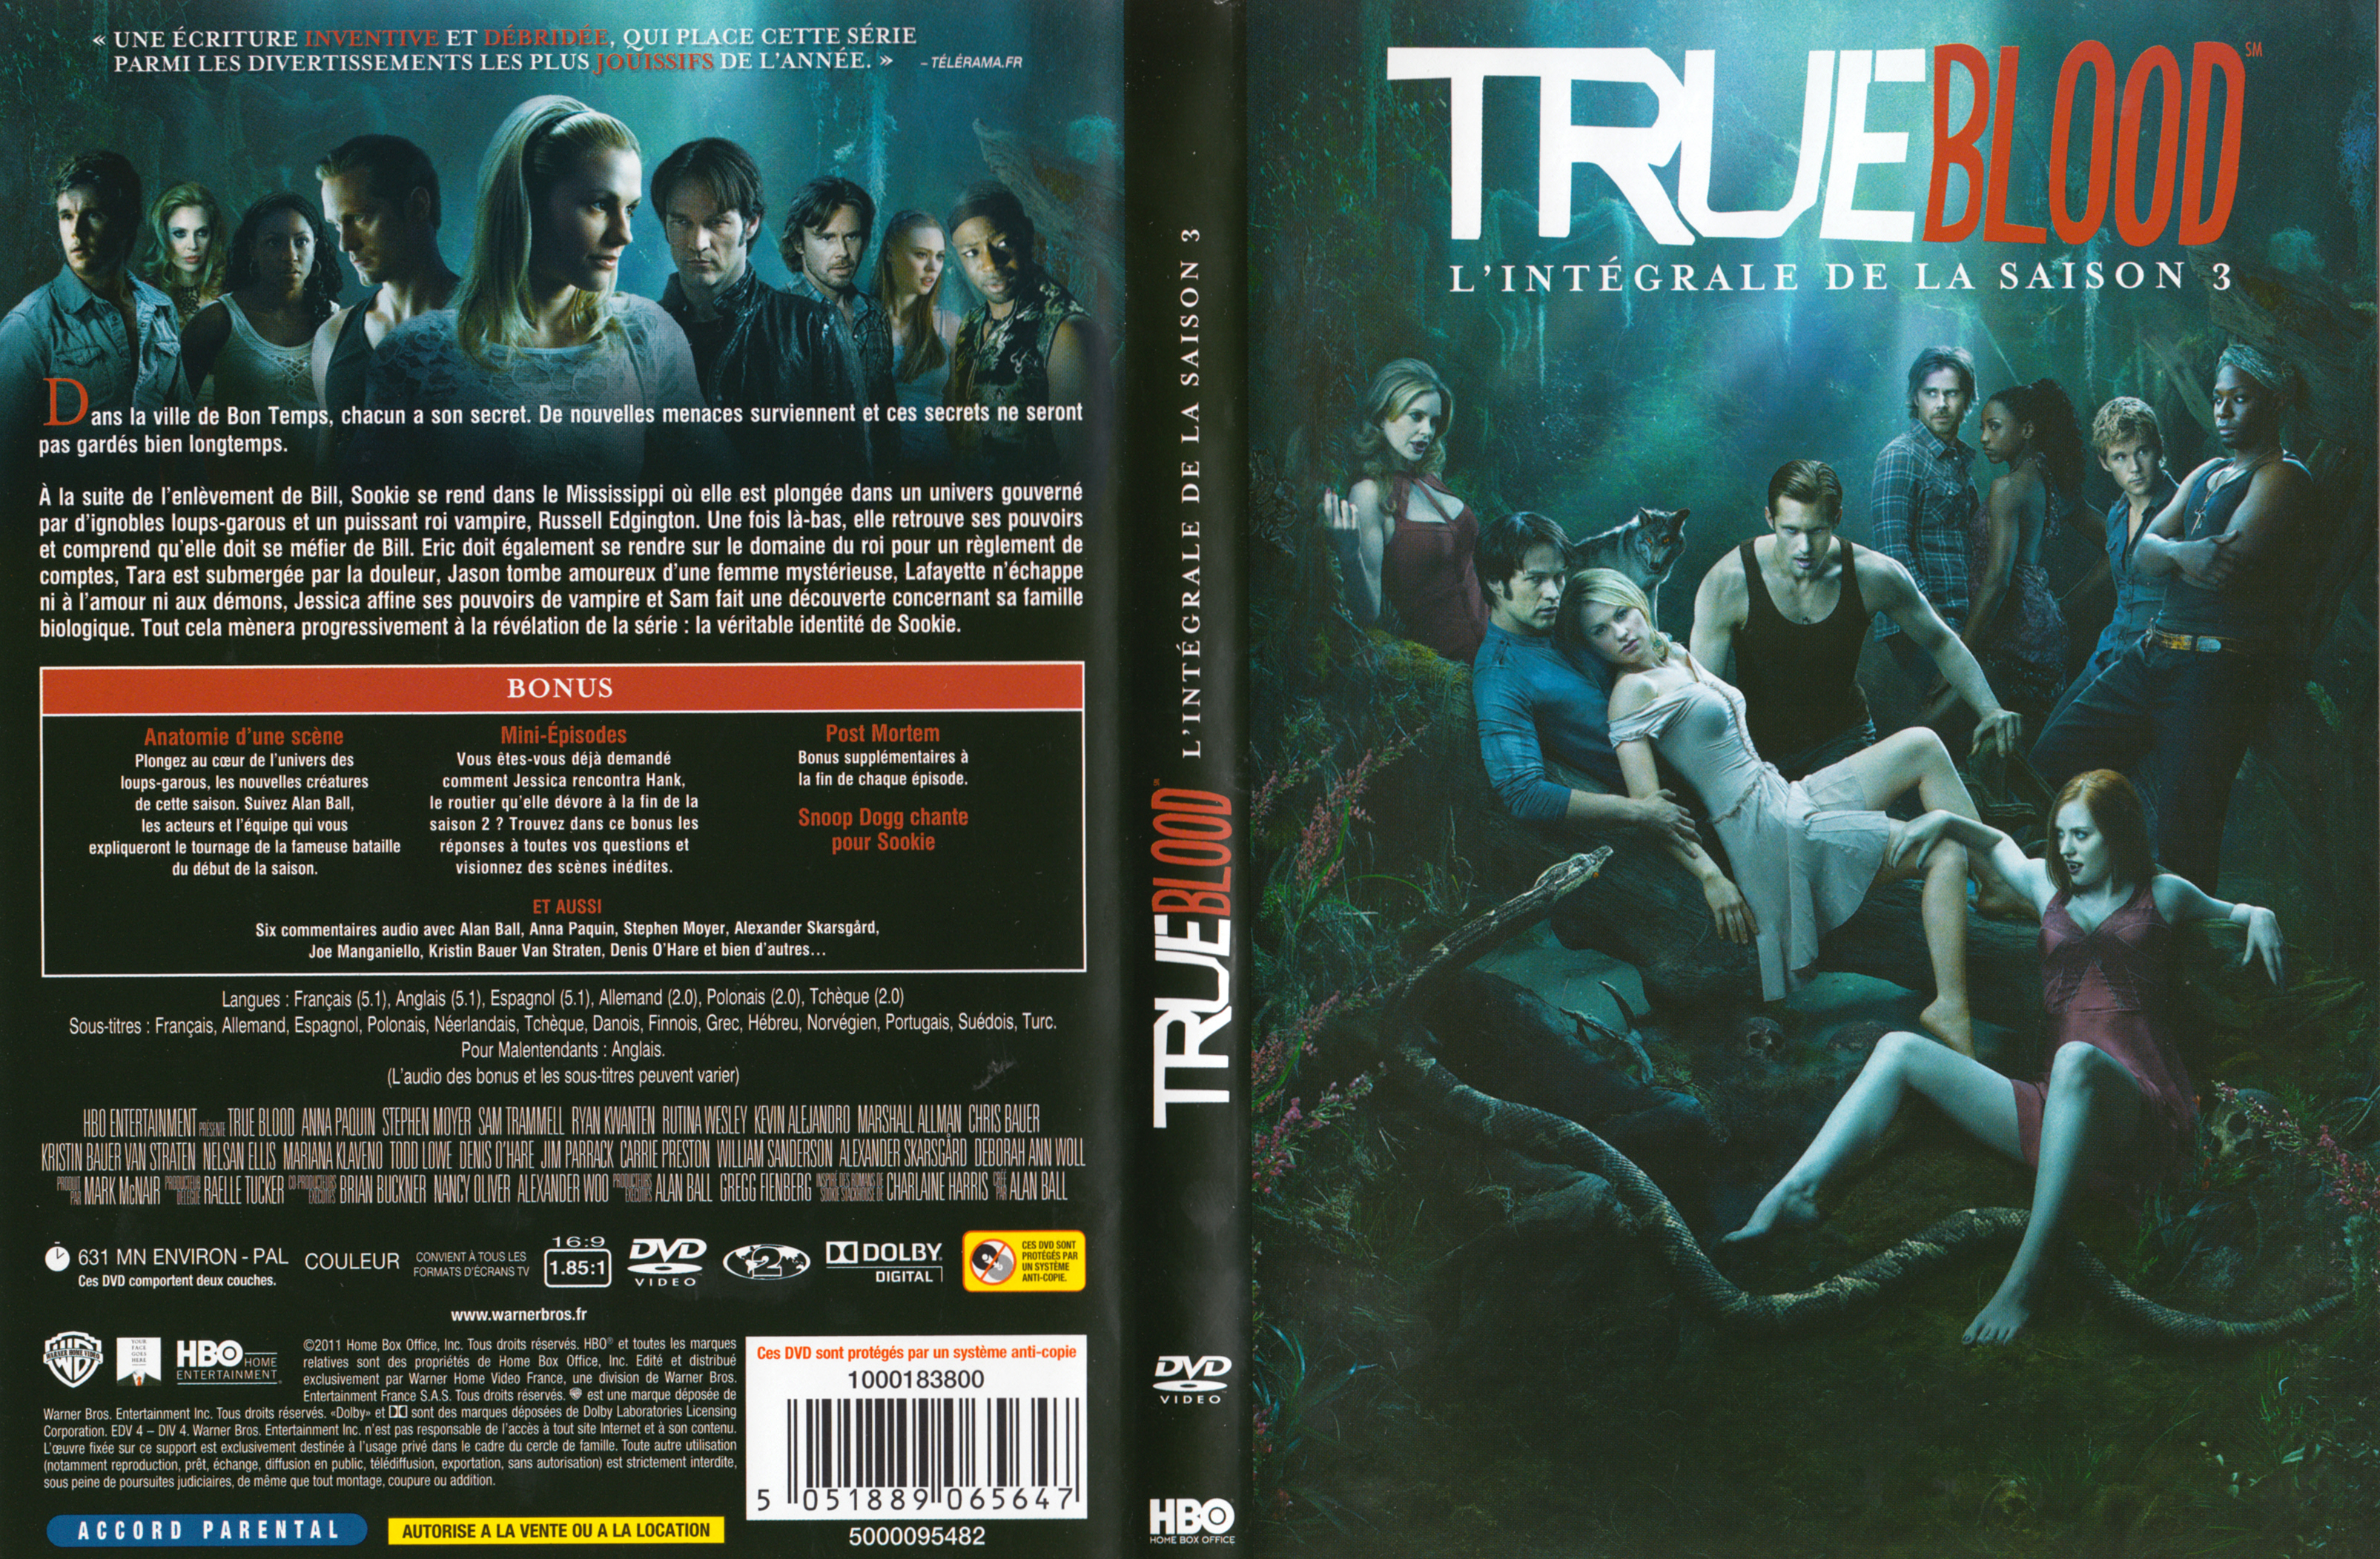 Jaquette DVD True blood saison 3